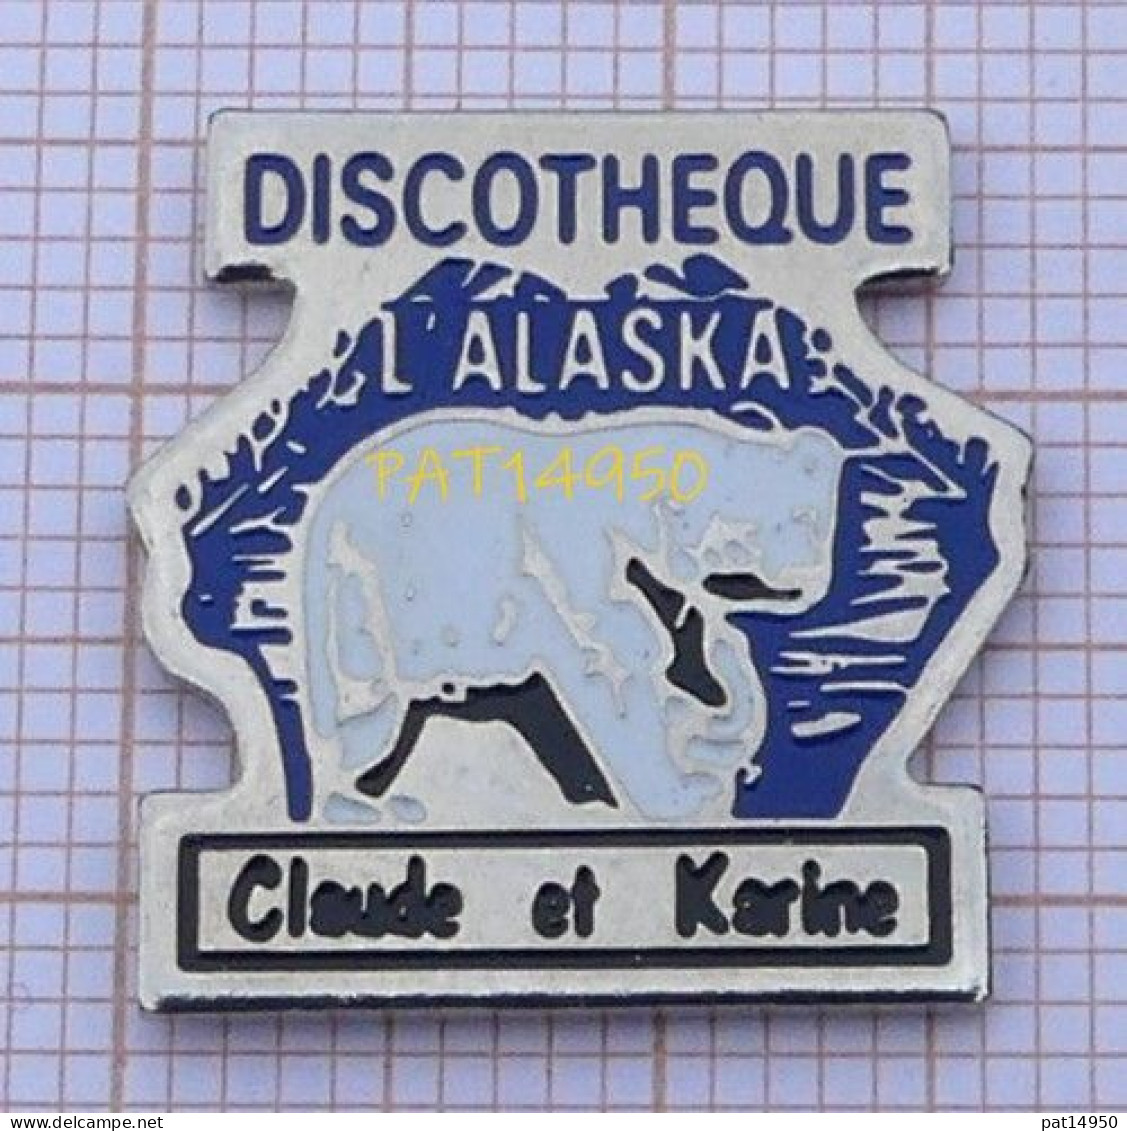 PAT14950  DISCOTHEQUE L'ALASKA Claude Et Karine CLUB BOITE DE NUIT OURS BLANC - Music